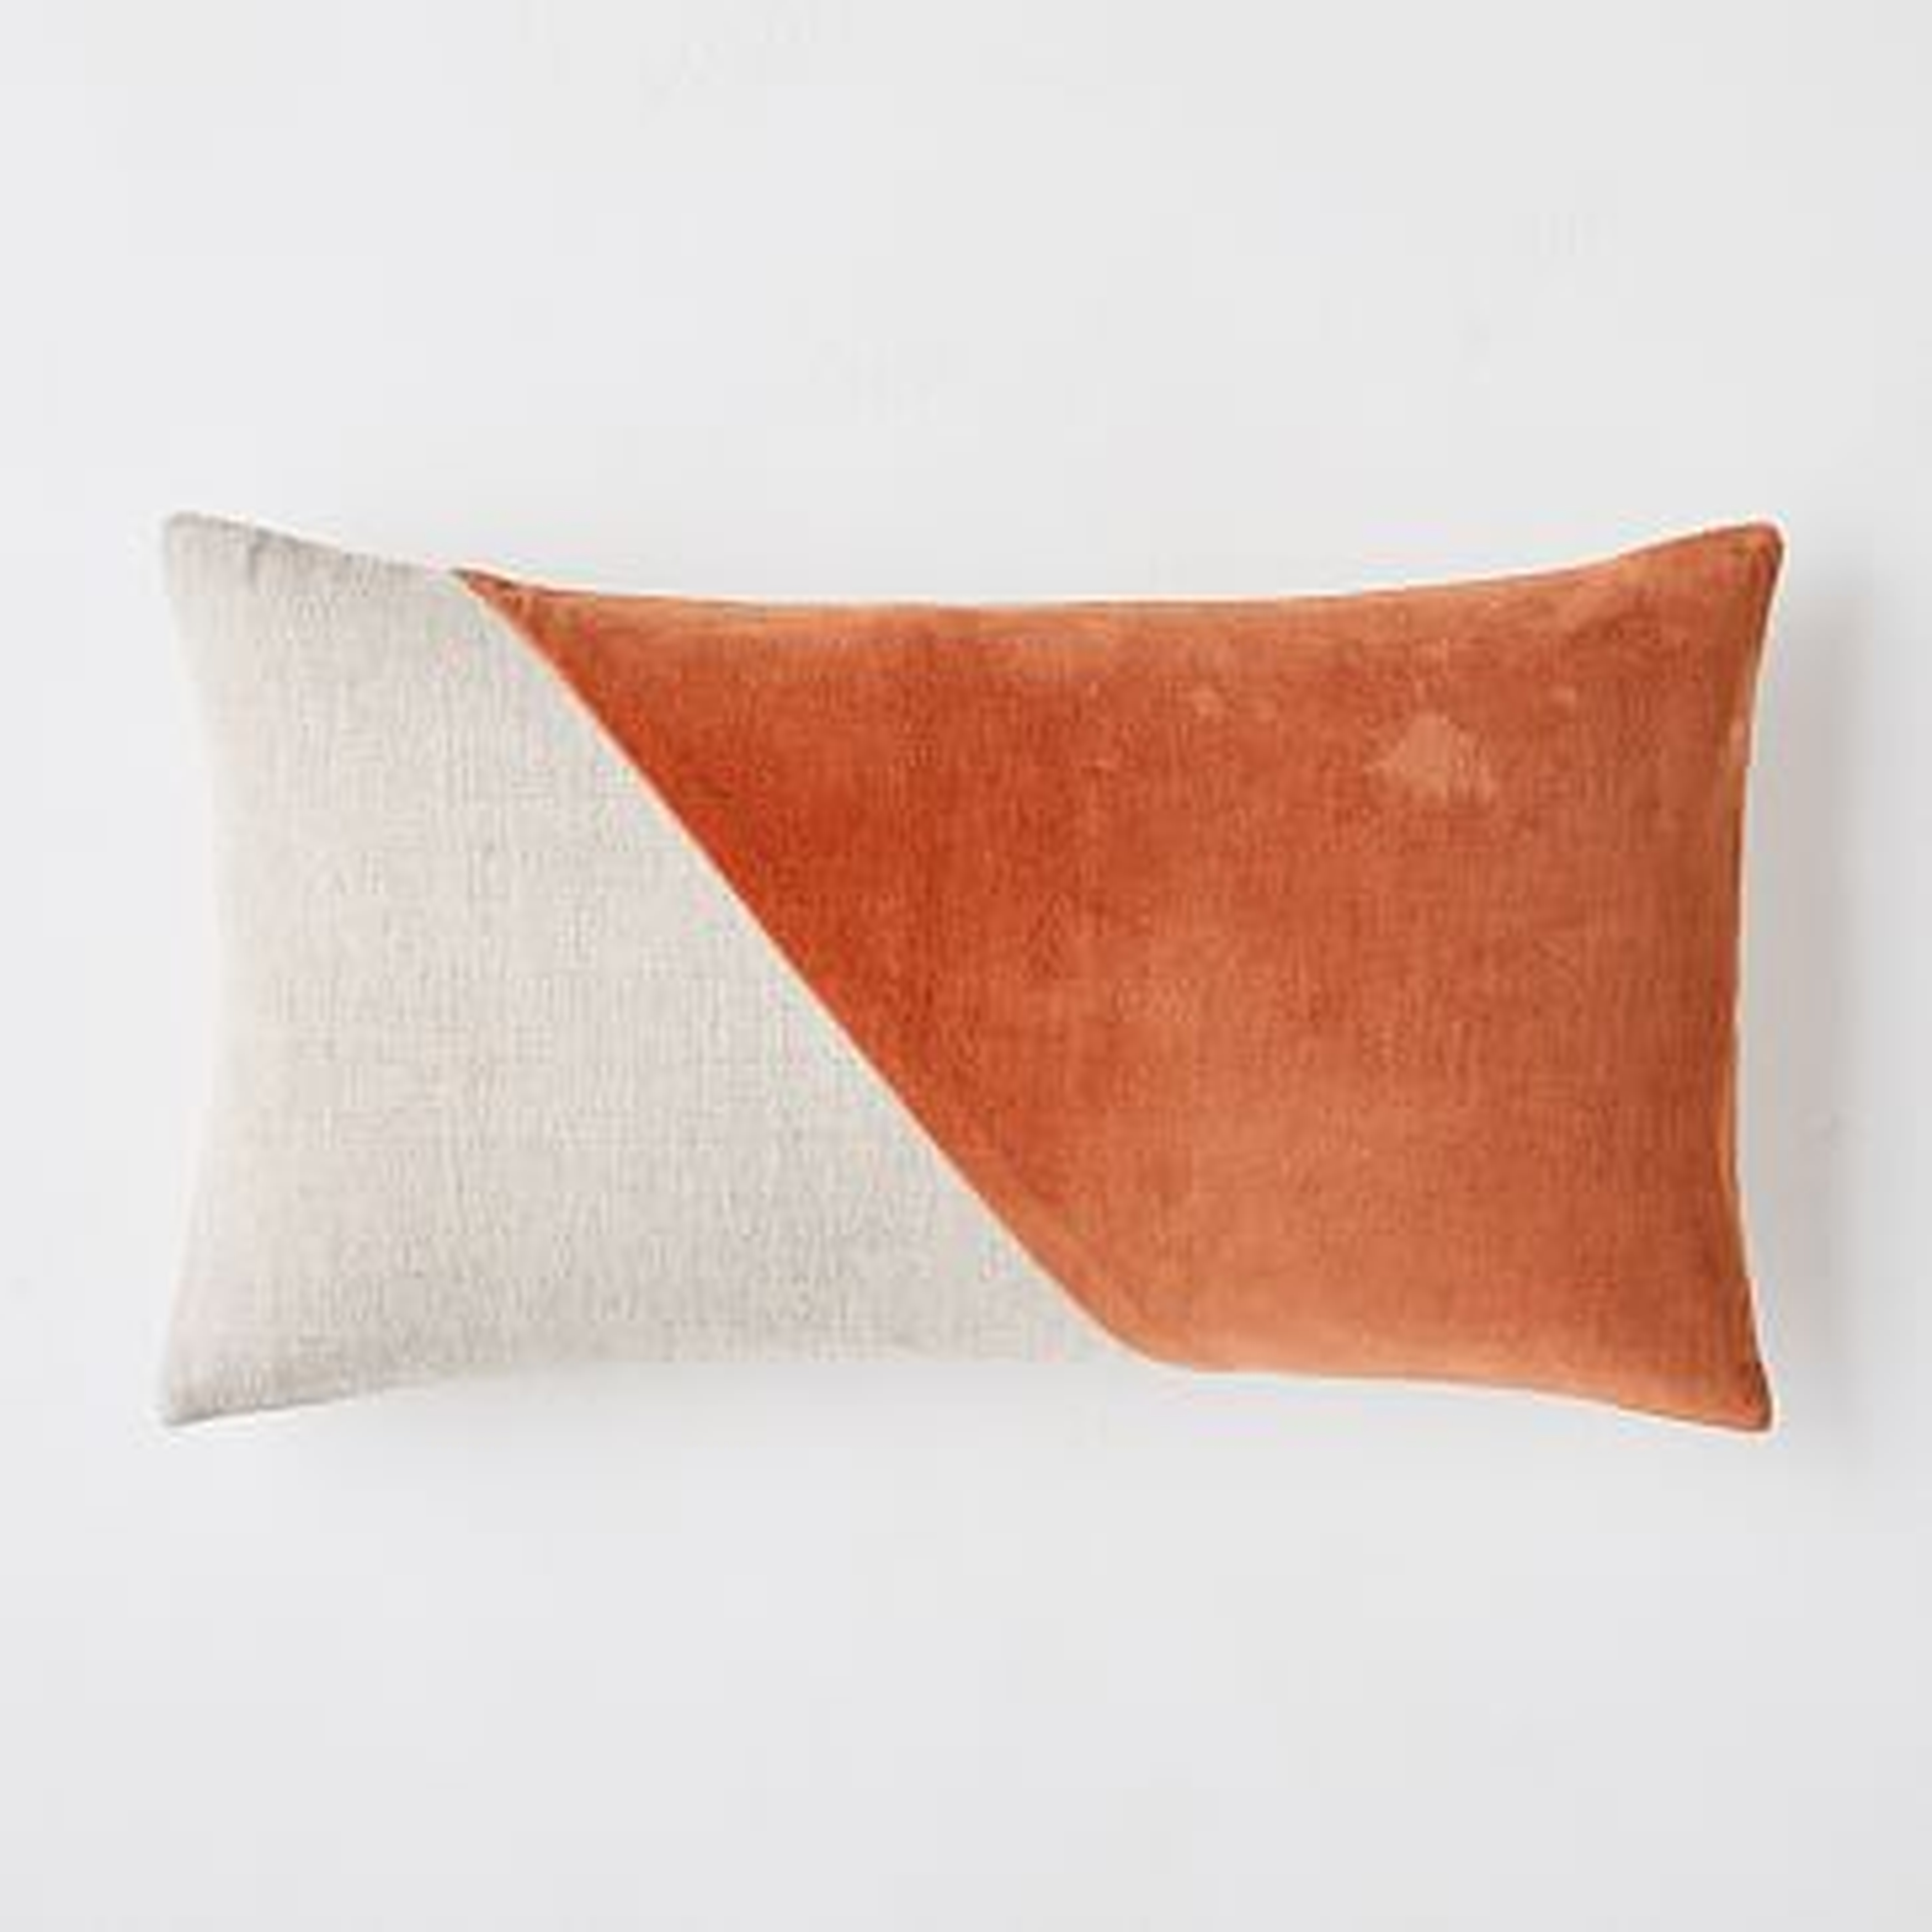 Cotton Linen + Velvet Corners Pillow Cover, 12"x21", Copper - West Elm